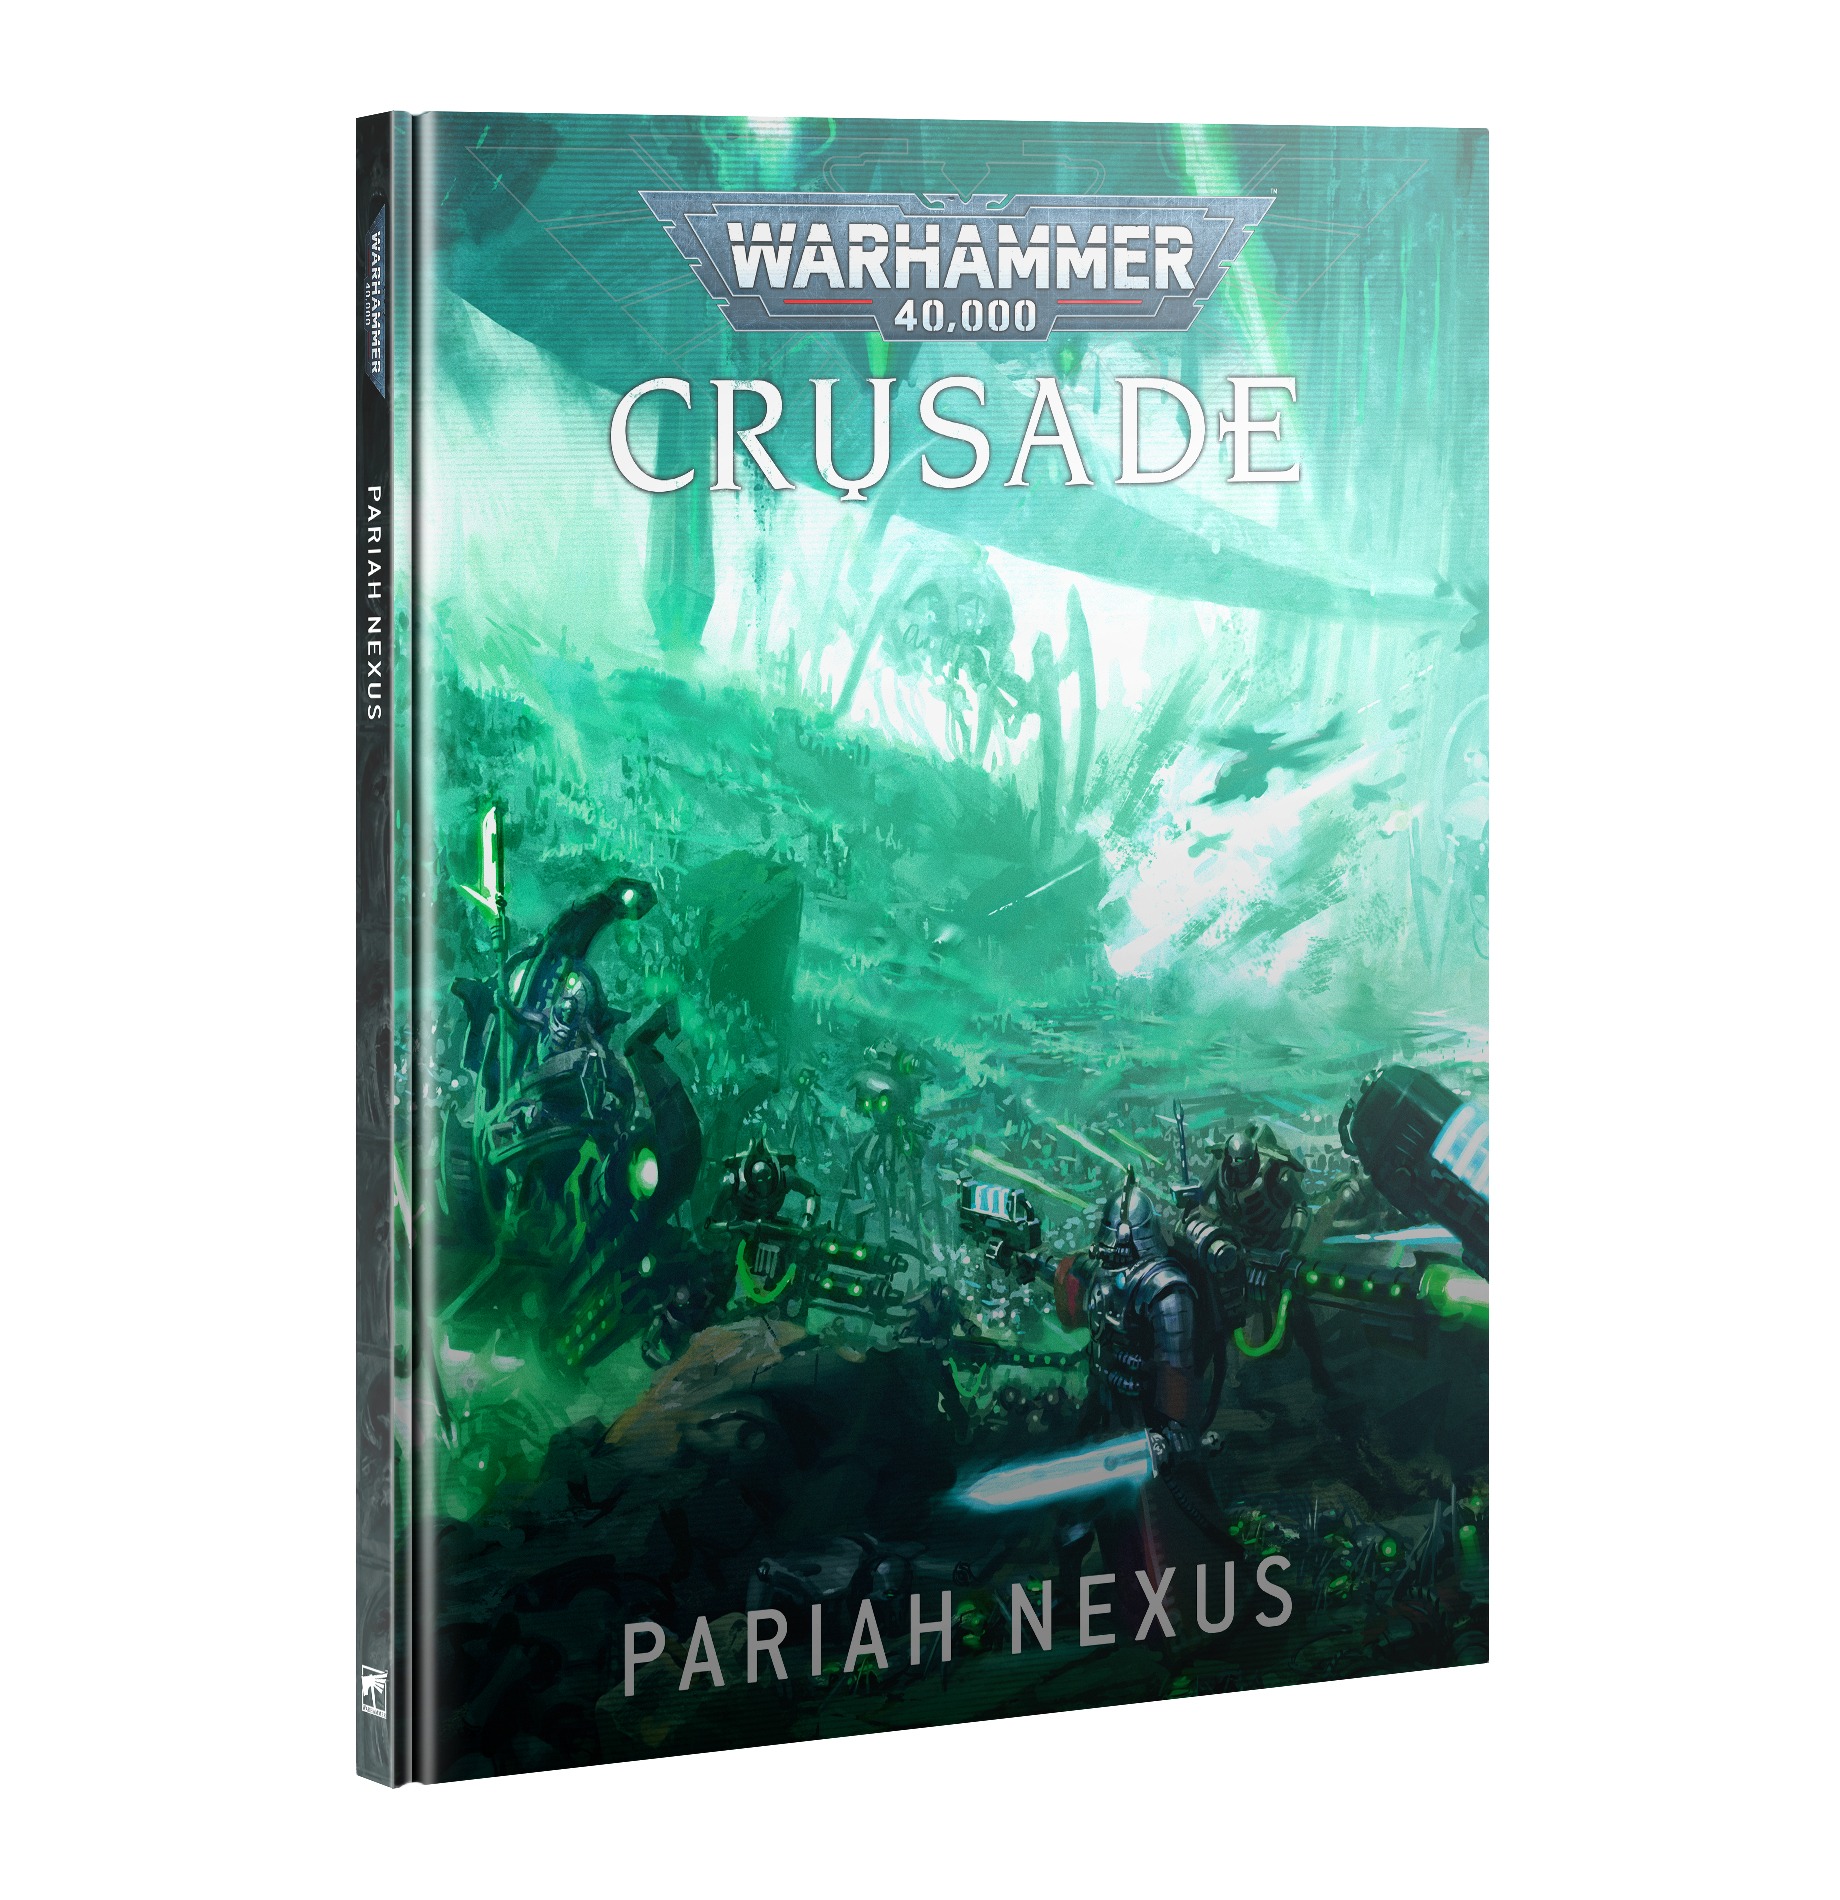 Pariah nexus la nouvelle extension narrative pour Warhammer 40K , une experience à partager entre amis dans notre univers préféré